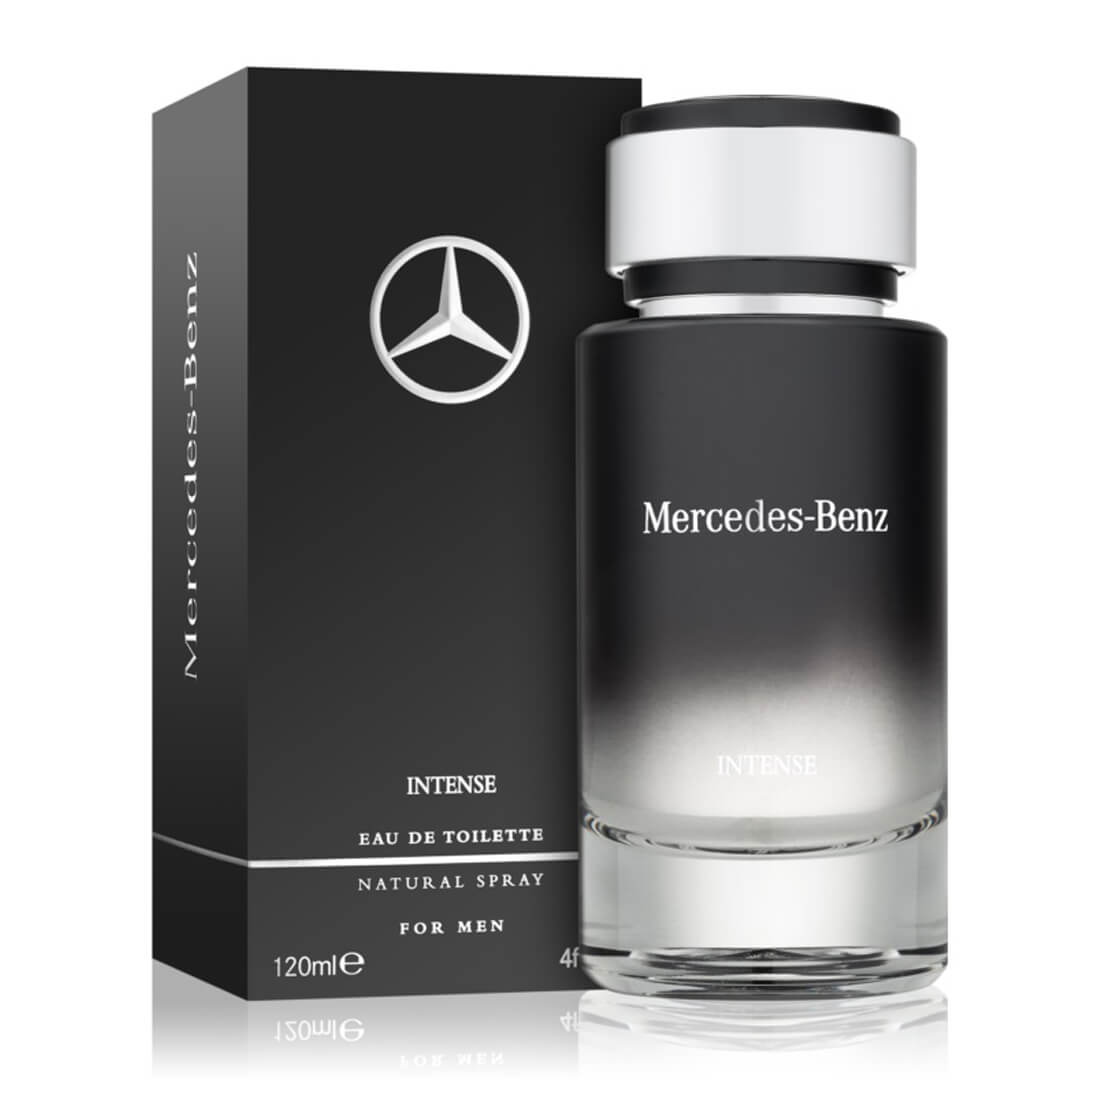 Mercedes-Benz Intense Eau de Toilette – Beauty Scentiments